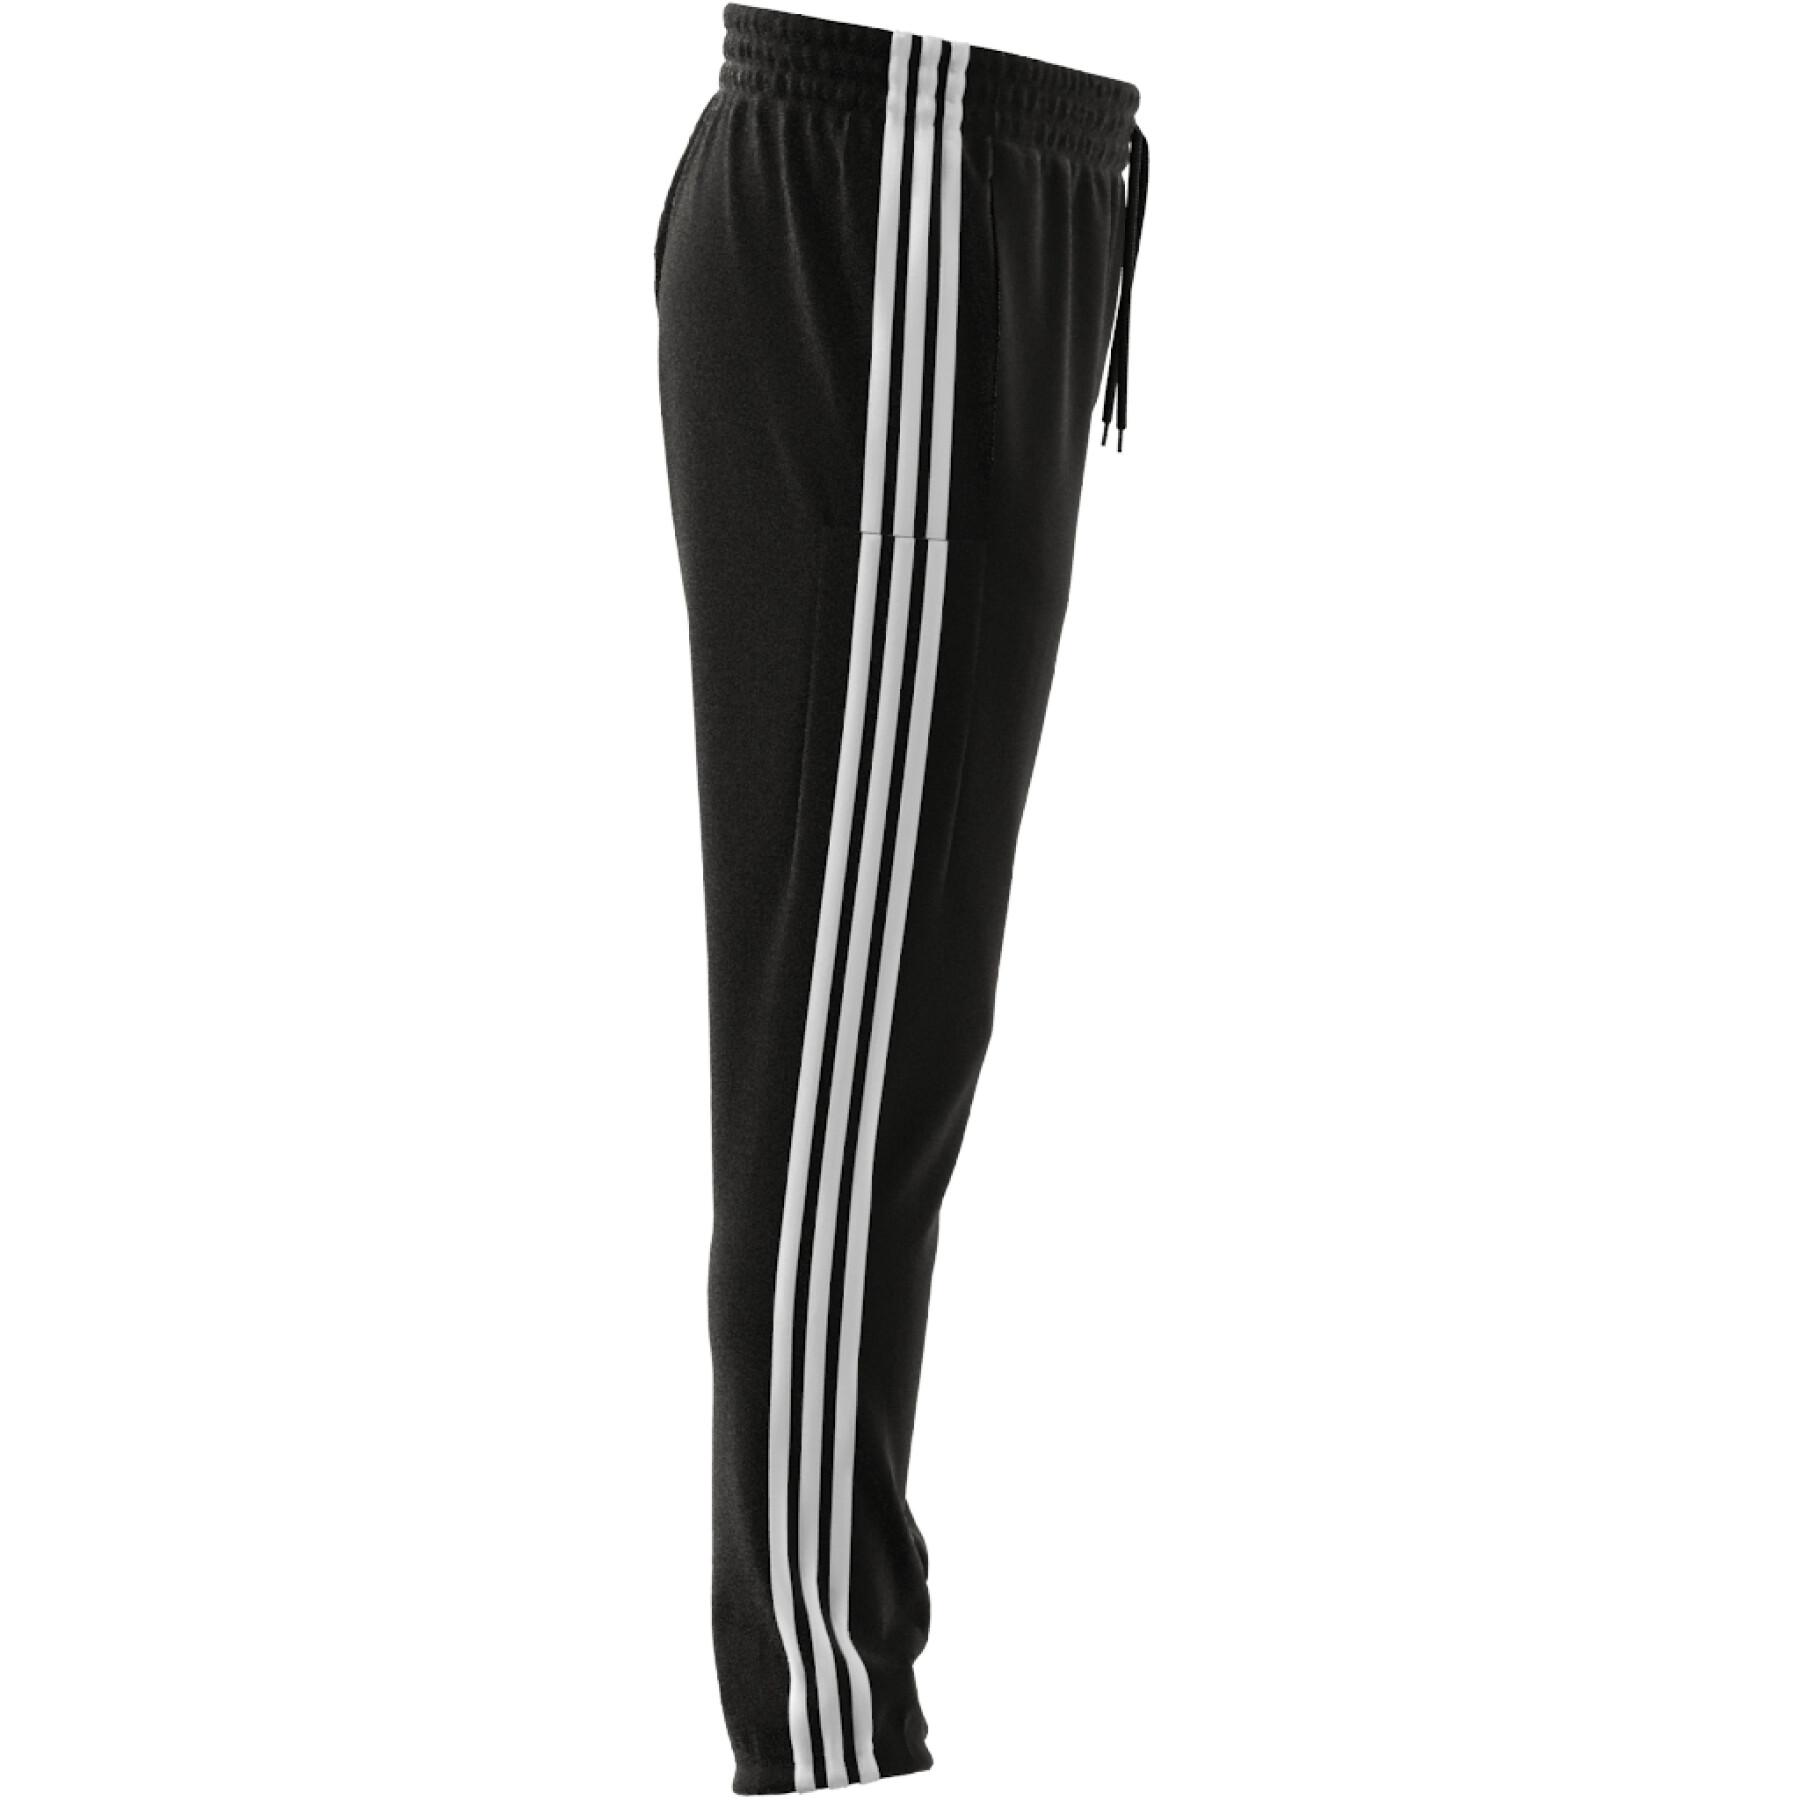 Jogging spindelförmig mit elastischen Ärmelbündchen adidas Essentials 3-Stripes